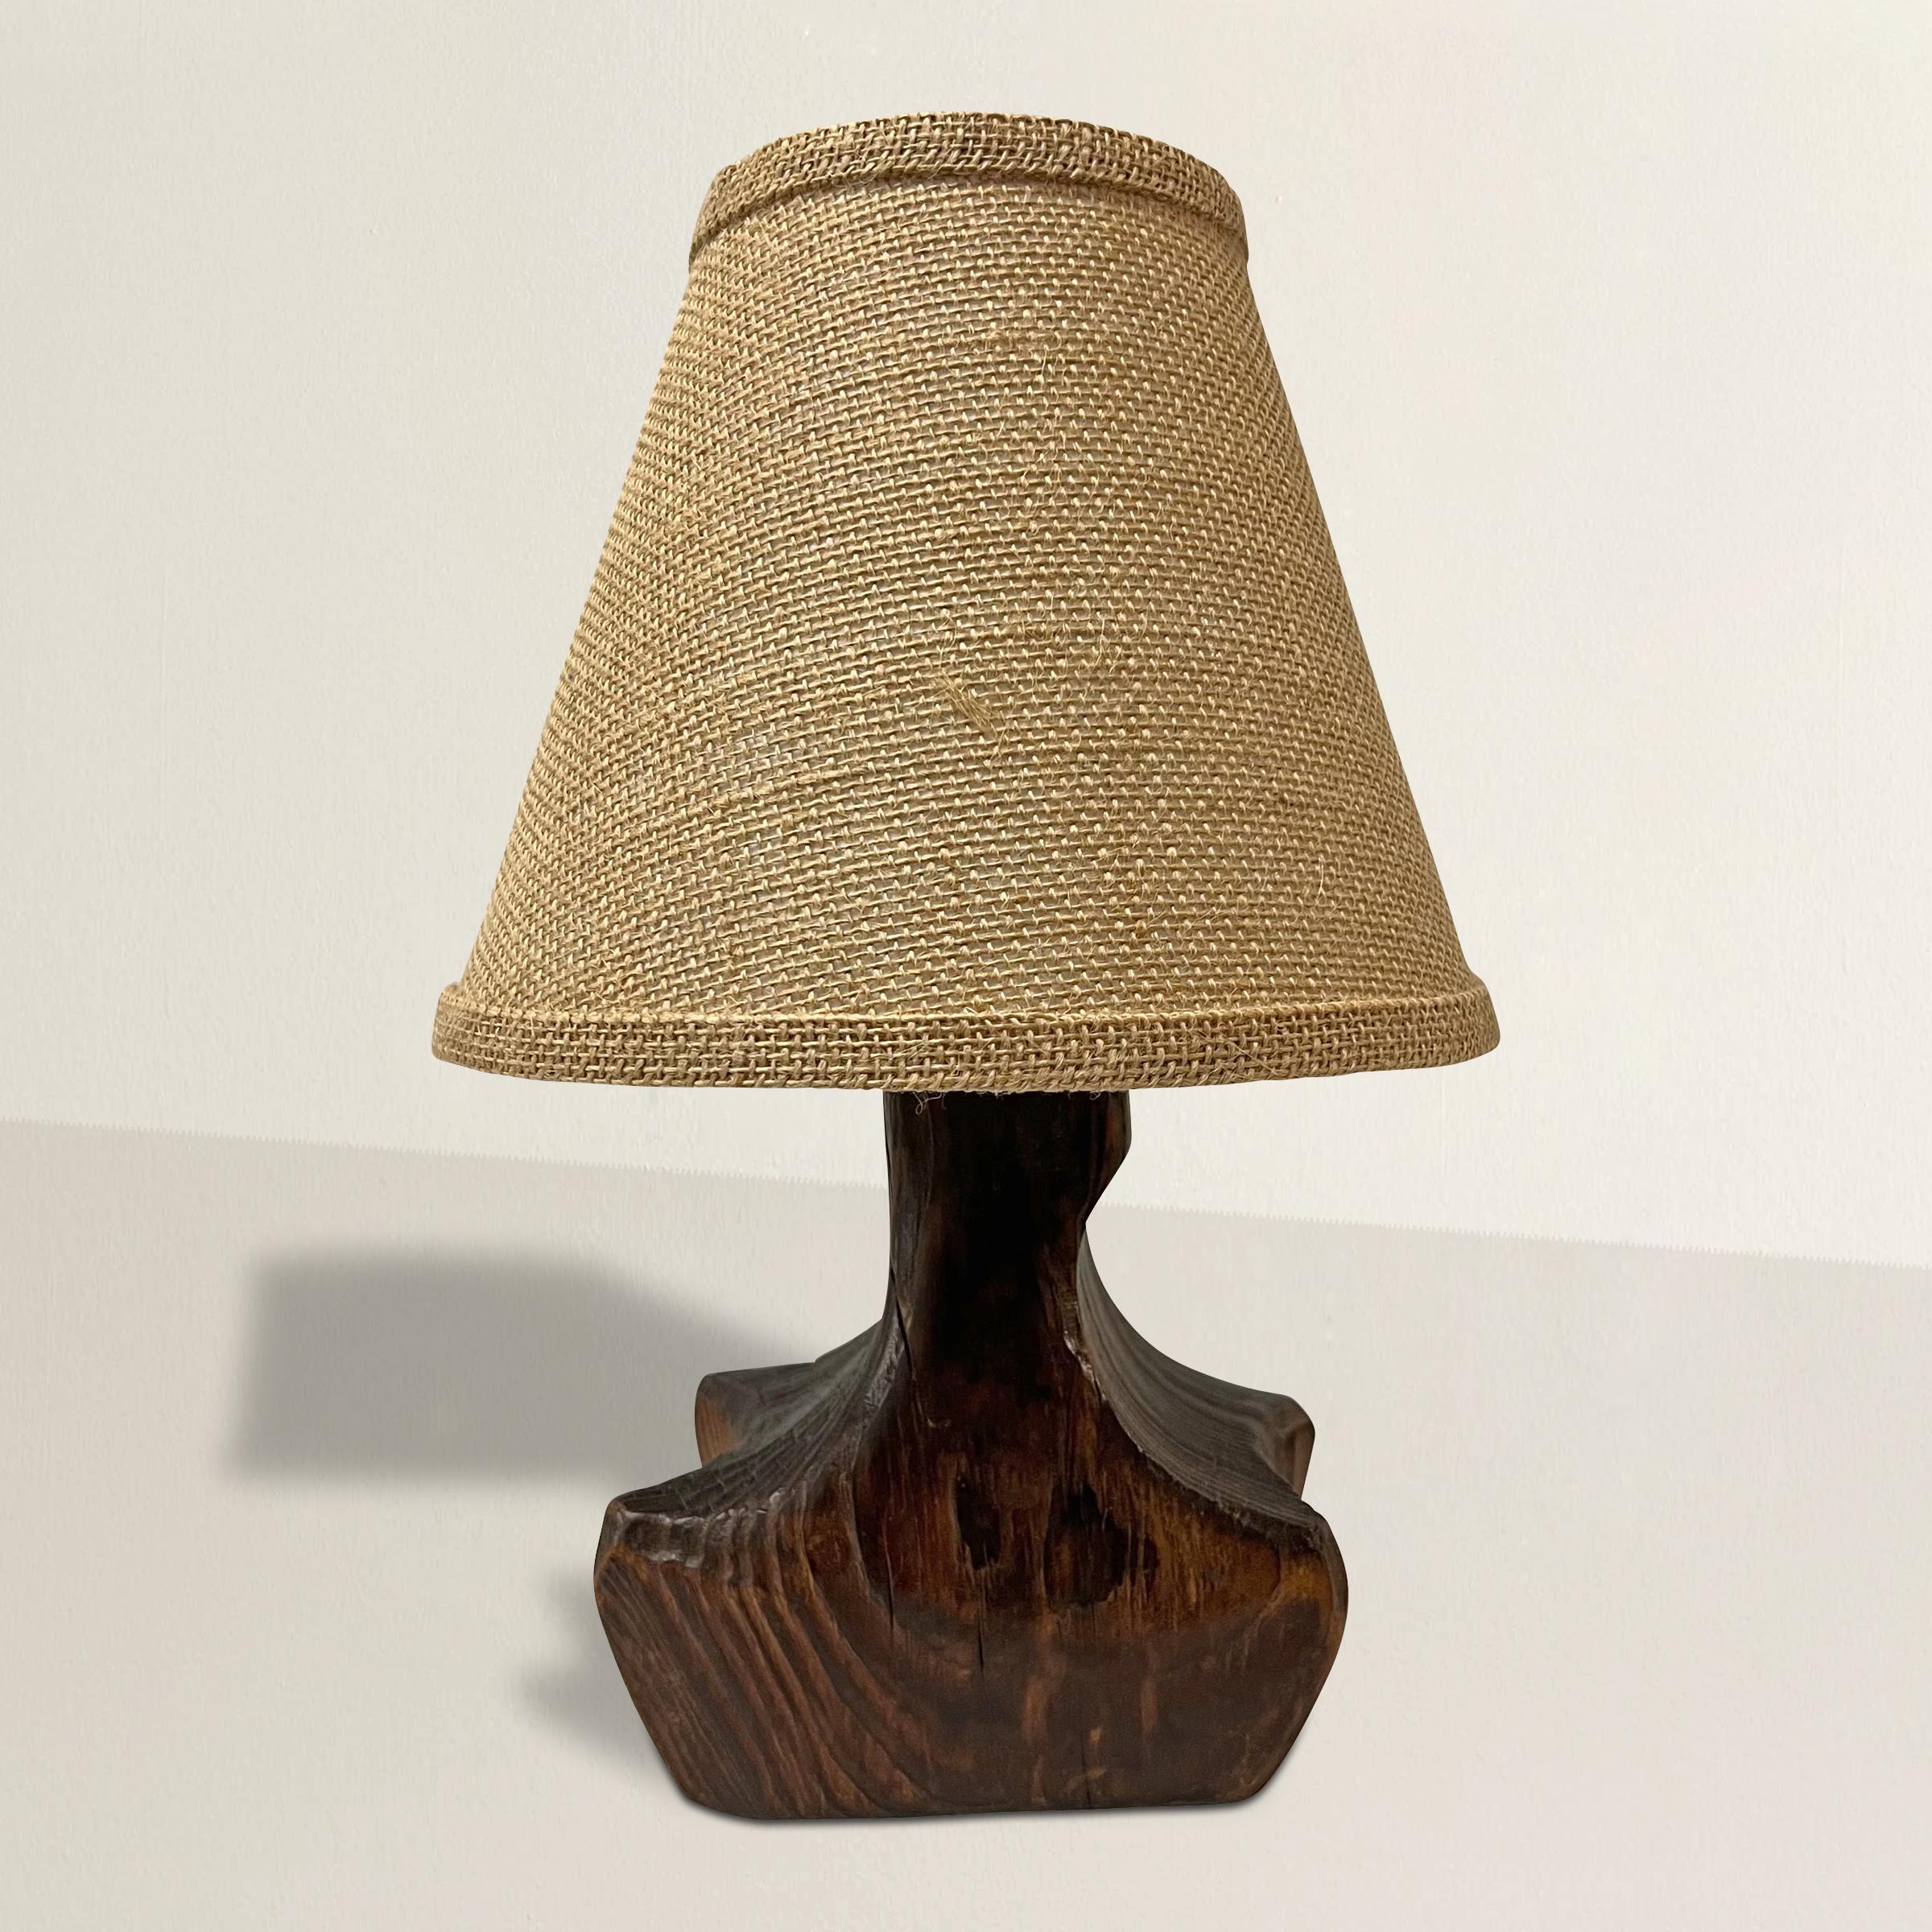 Eine schicke und hübsche Holzlampe der französischen Moderne des frühen 20. Jahrhunderts in organischer Form und mit einem maßgefertigten Schirm aus Sackleinen, neu verkabelt für die USA mit einer Seidenkordel mit Golddraht.  Die perfekte Größe für